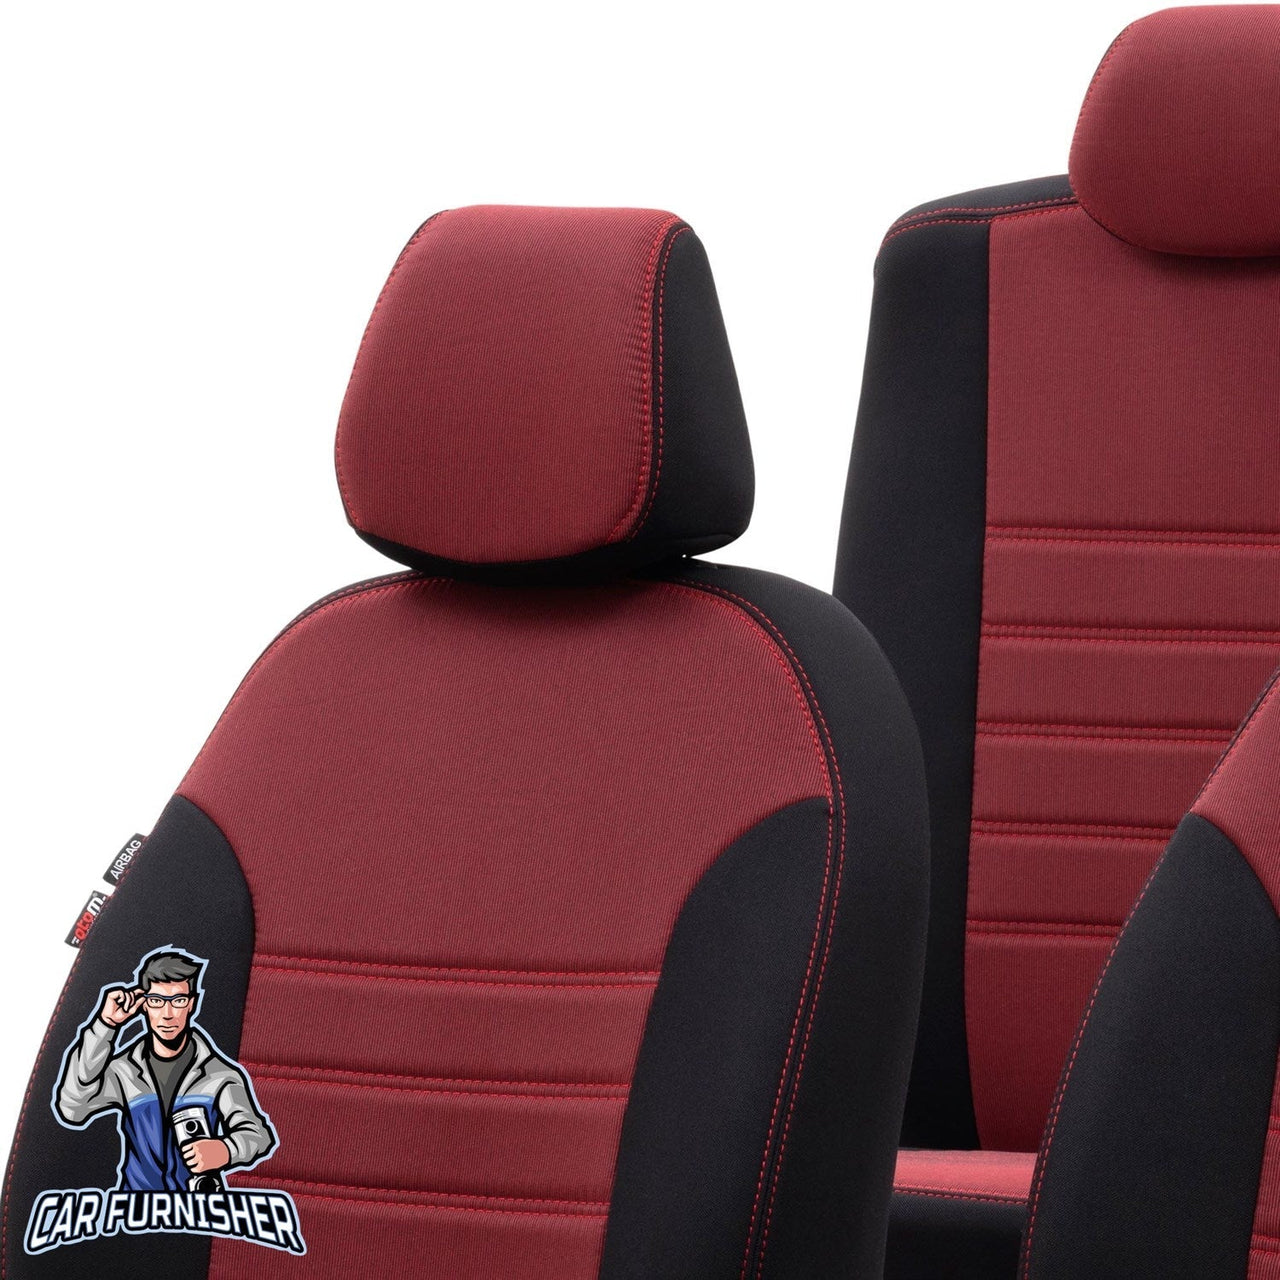 Citroen C4 Seat Cover Original Jacquard Design Red Jacquard Fabric